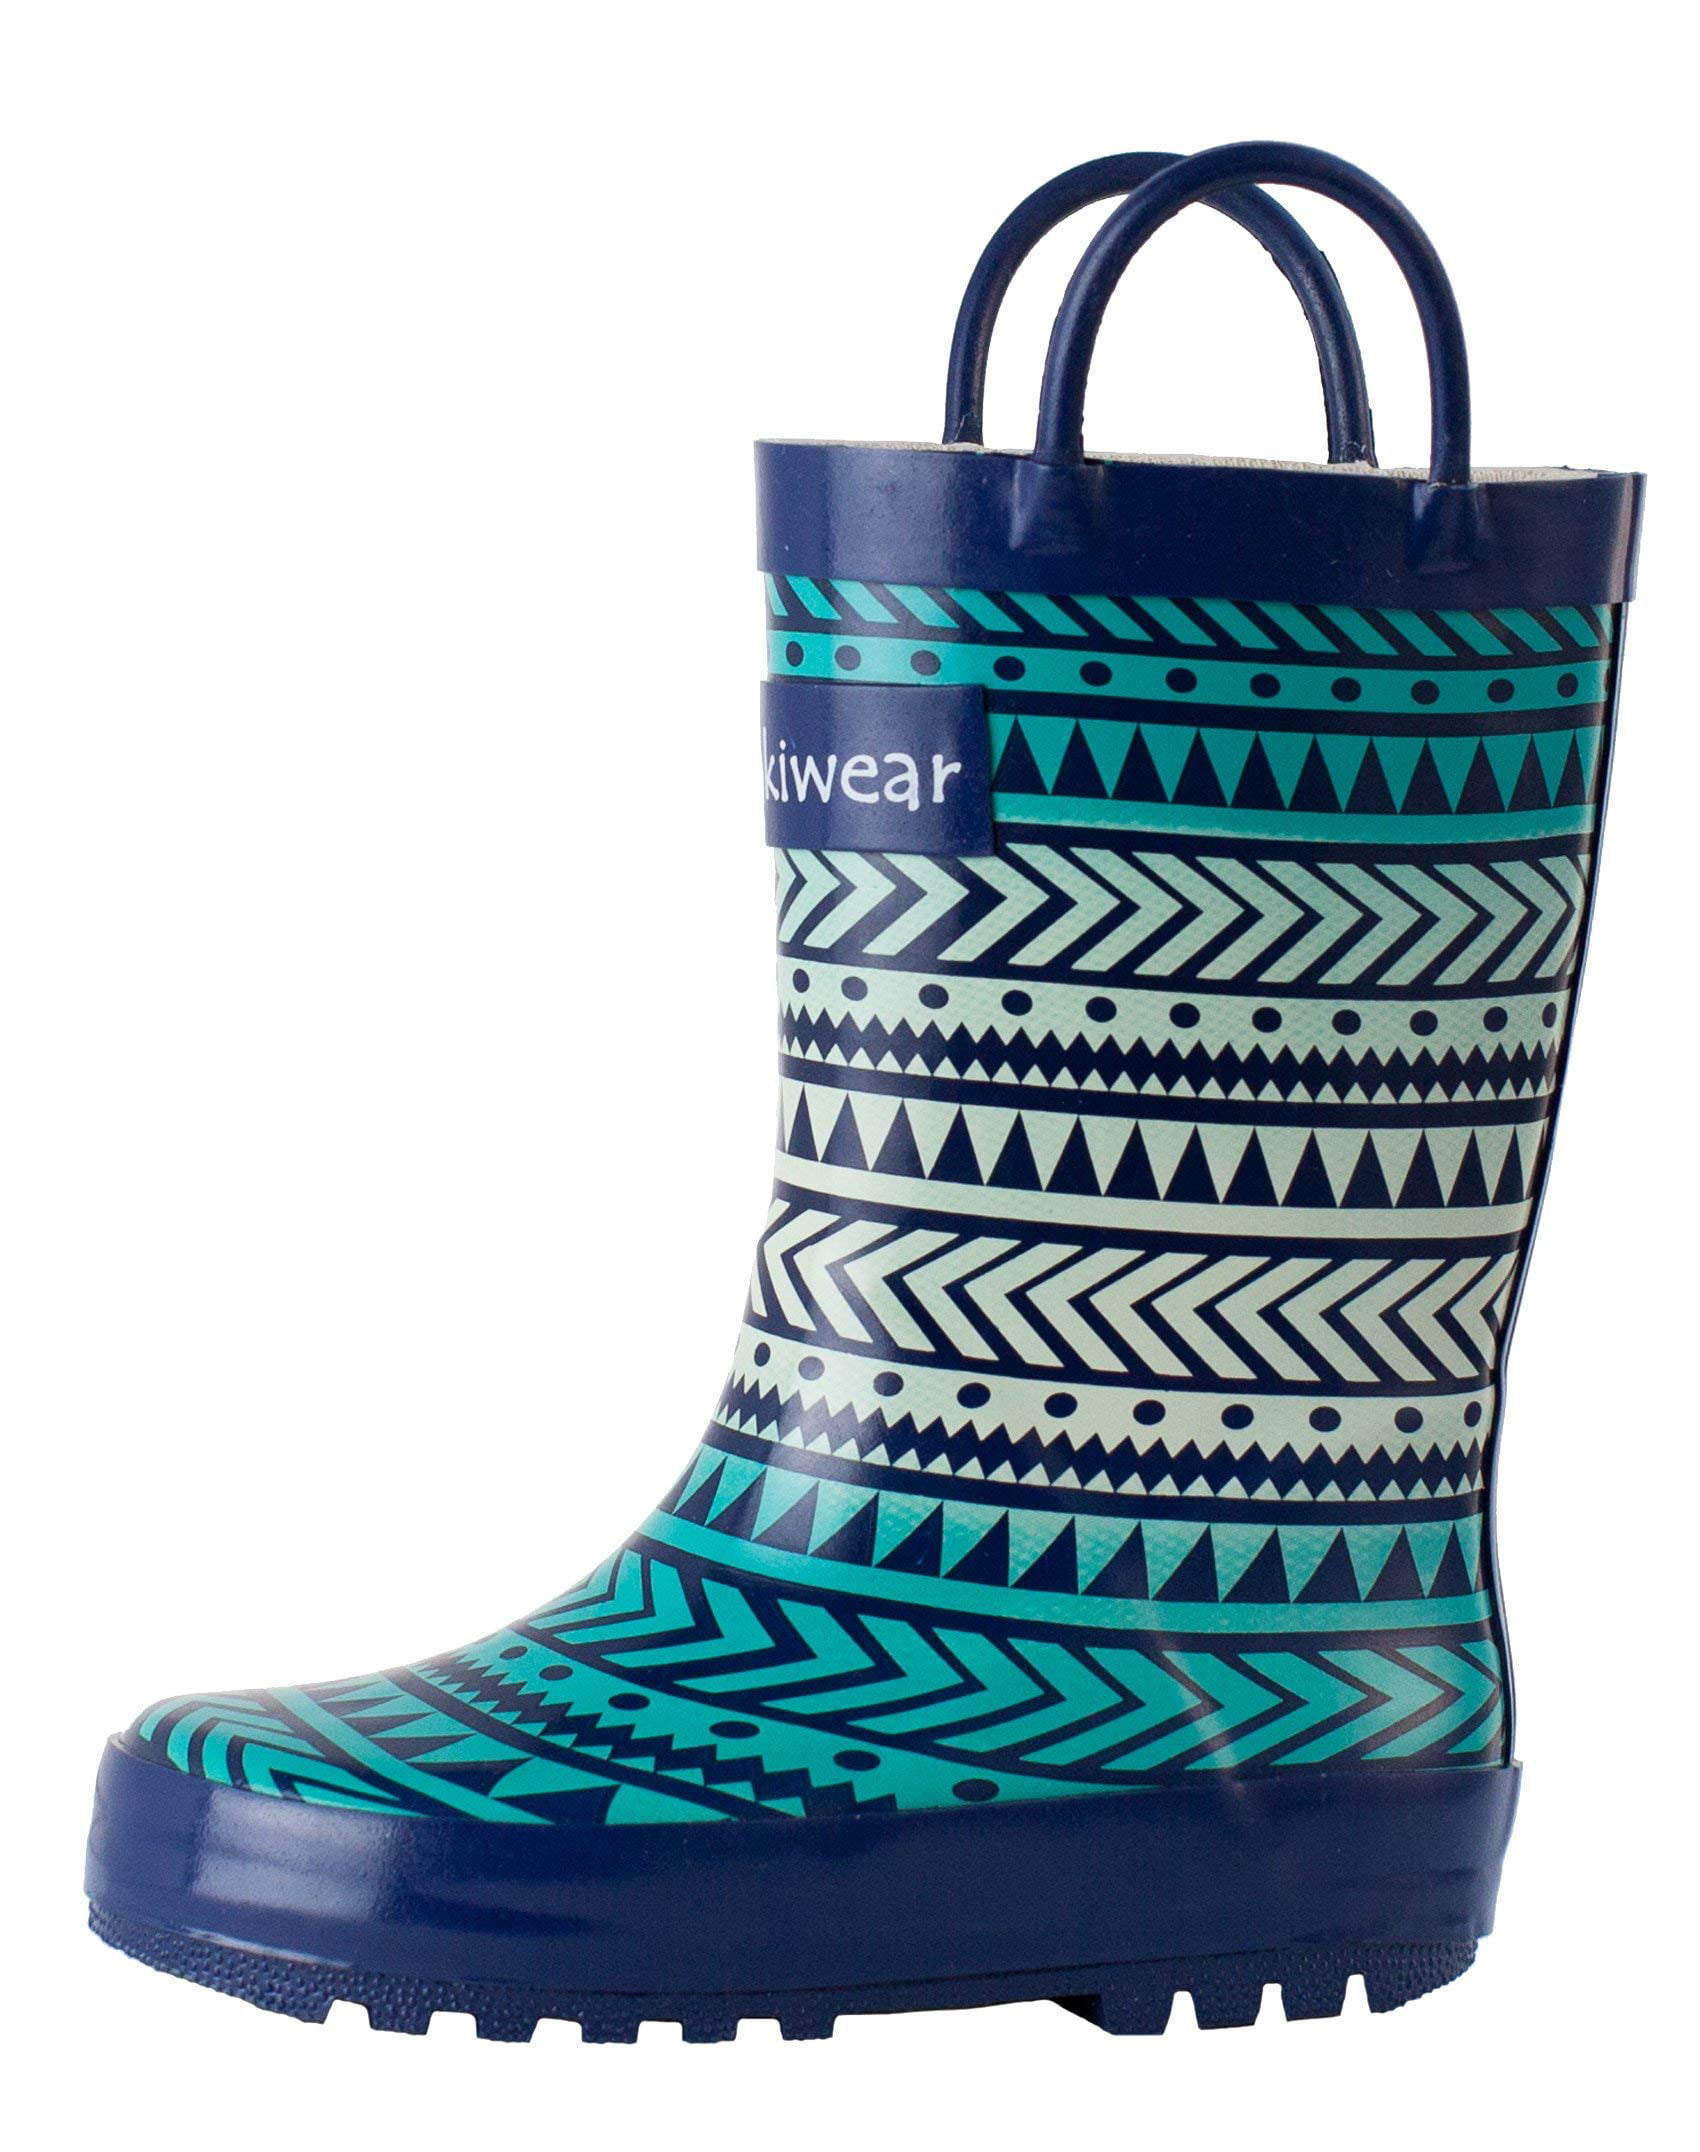 OAKI Kids Waterproof Rubber Rain Boots with Easy-On Handles 